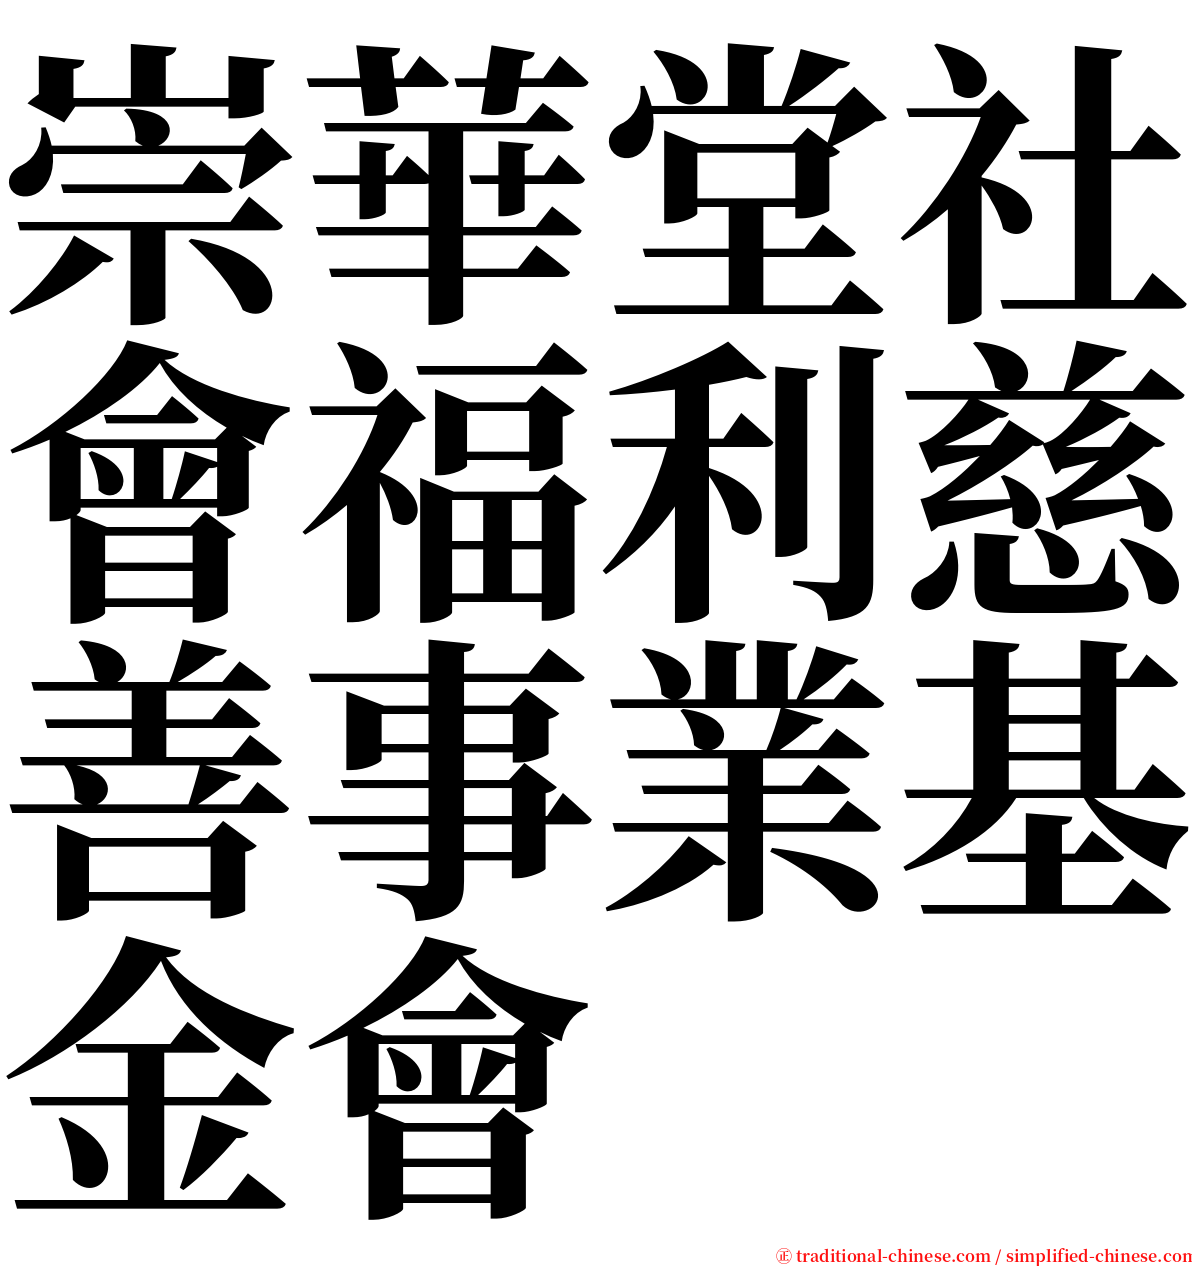 崇華堂社會福利慈善事業基金會 serif font